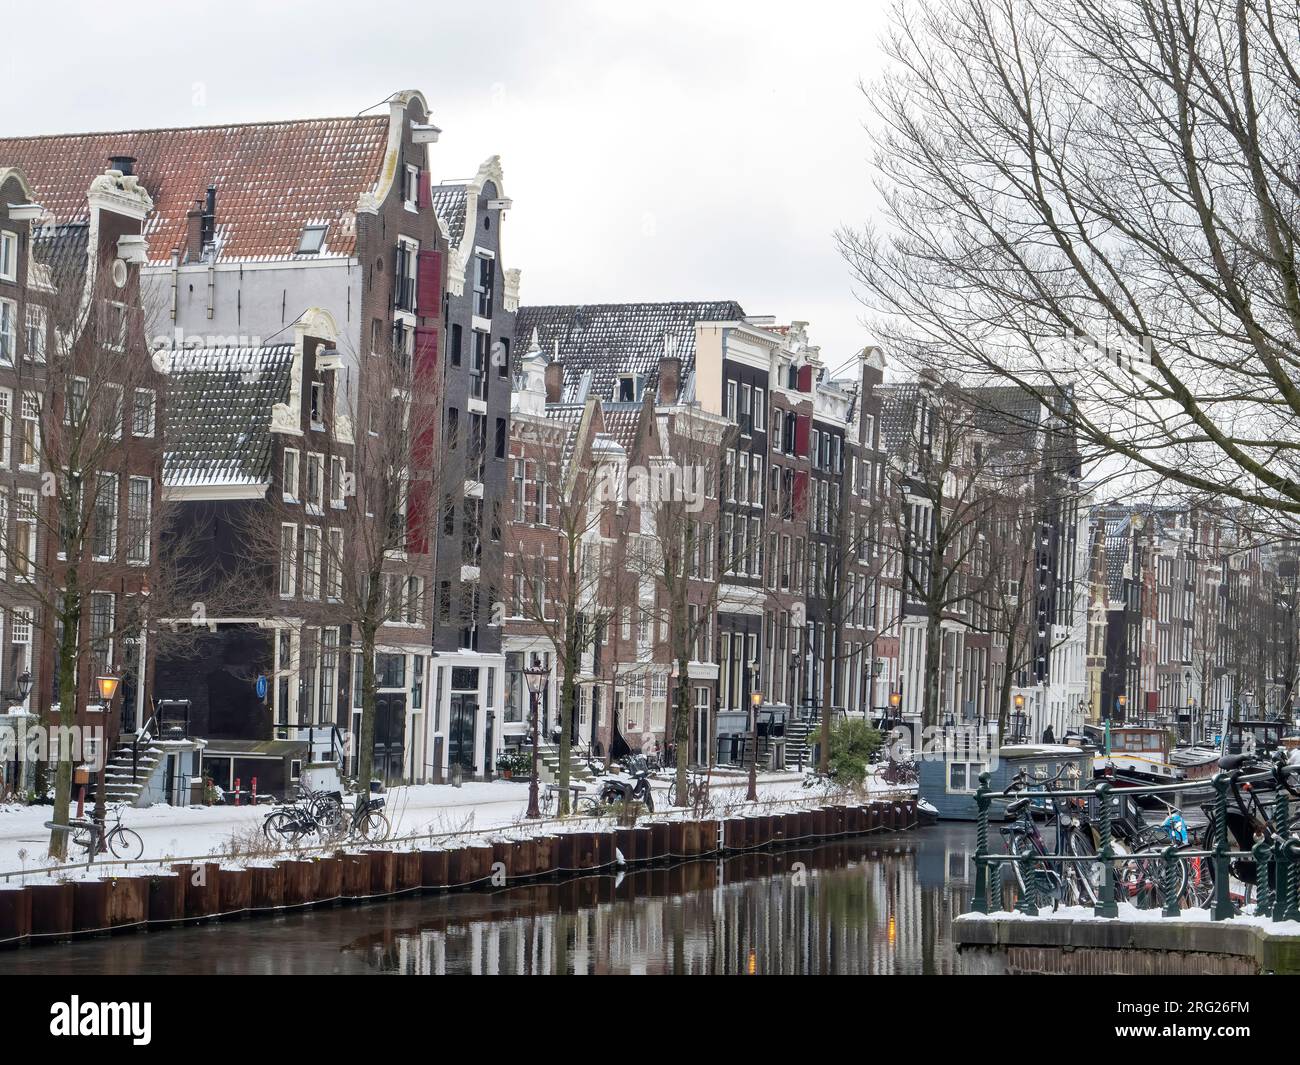 Brouwersgracht (Amsterdam ) en hiver, avec des bateaux et des maisons enneigés Banque D'Images